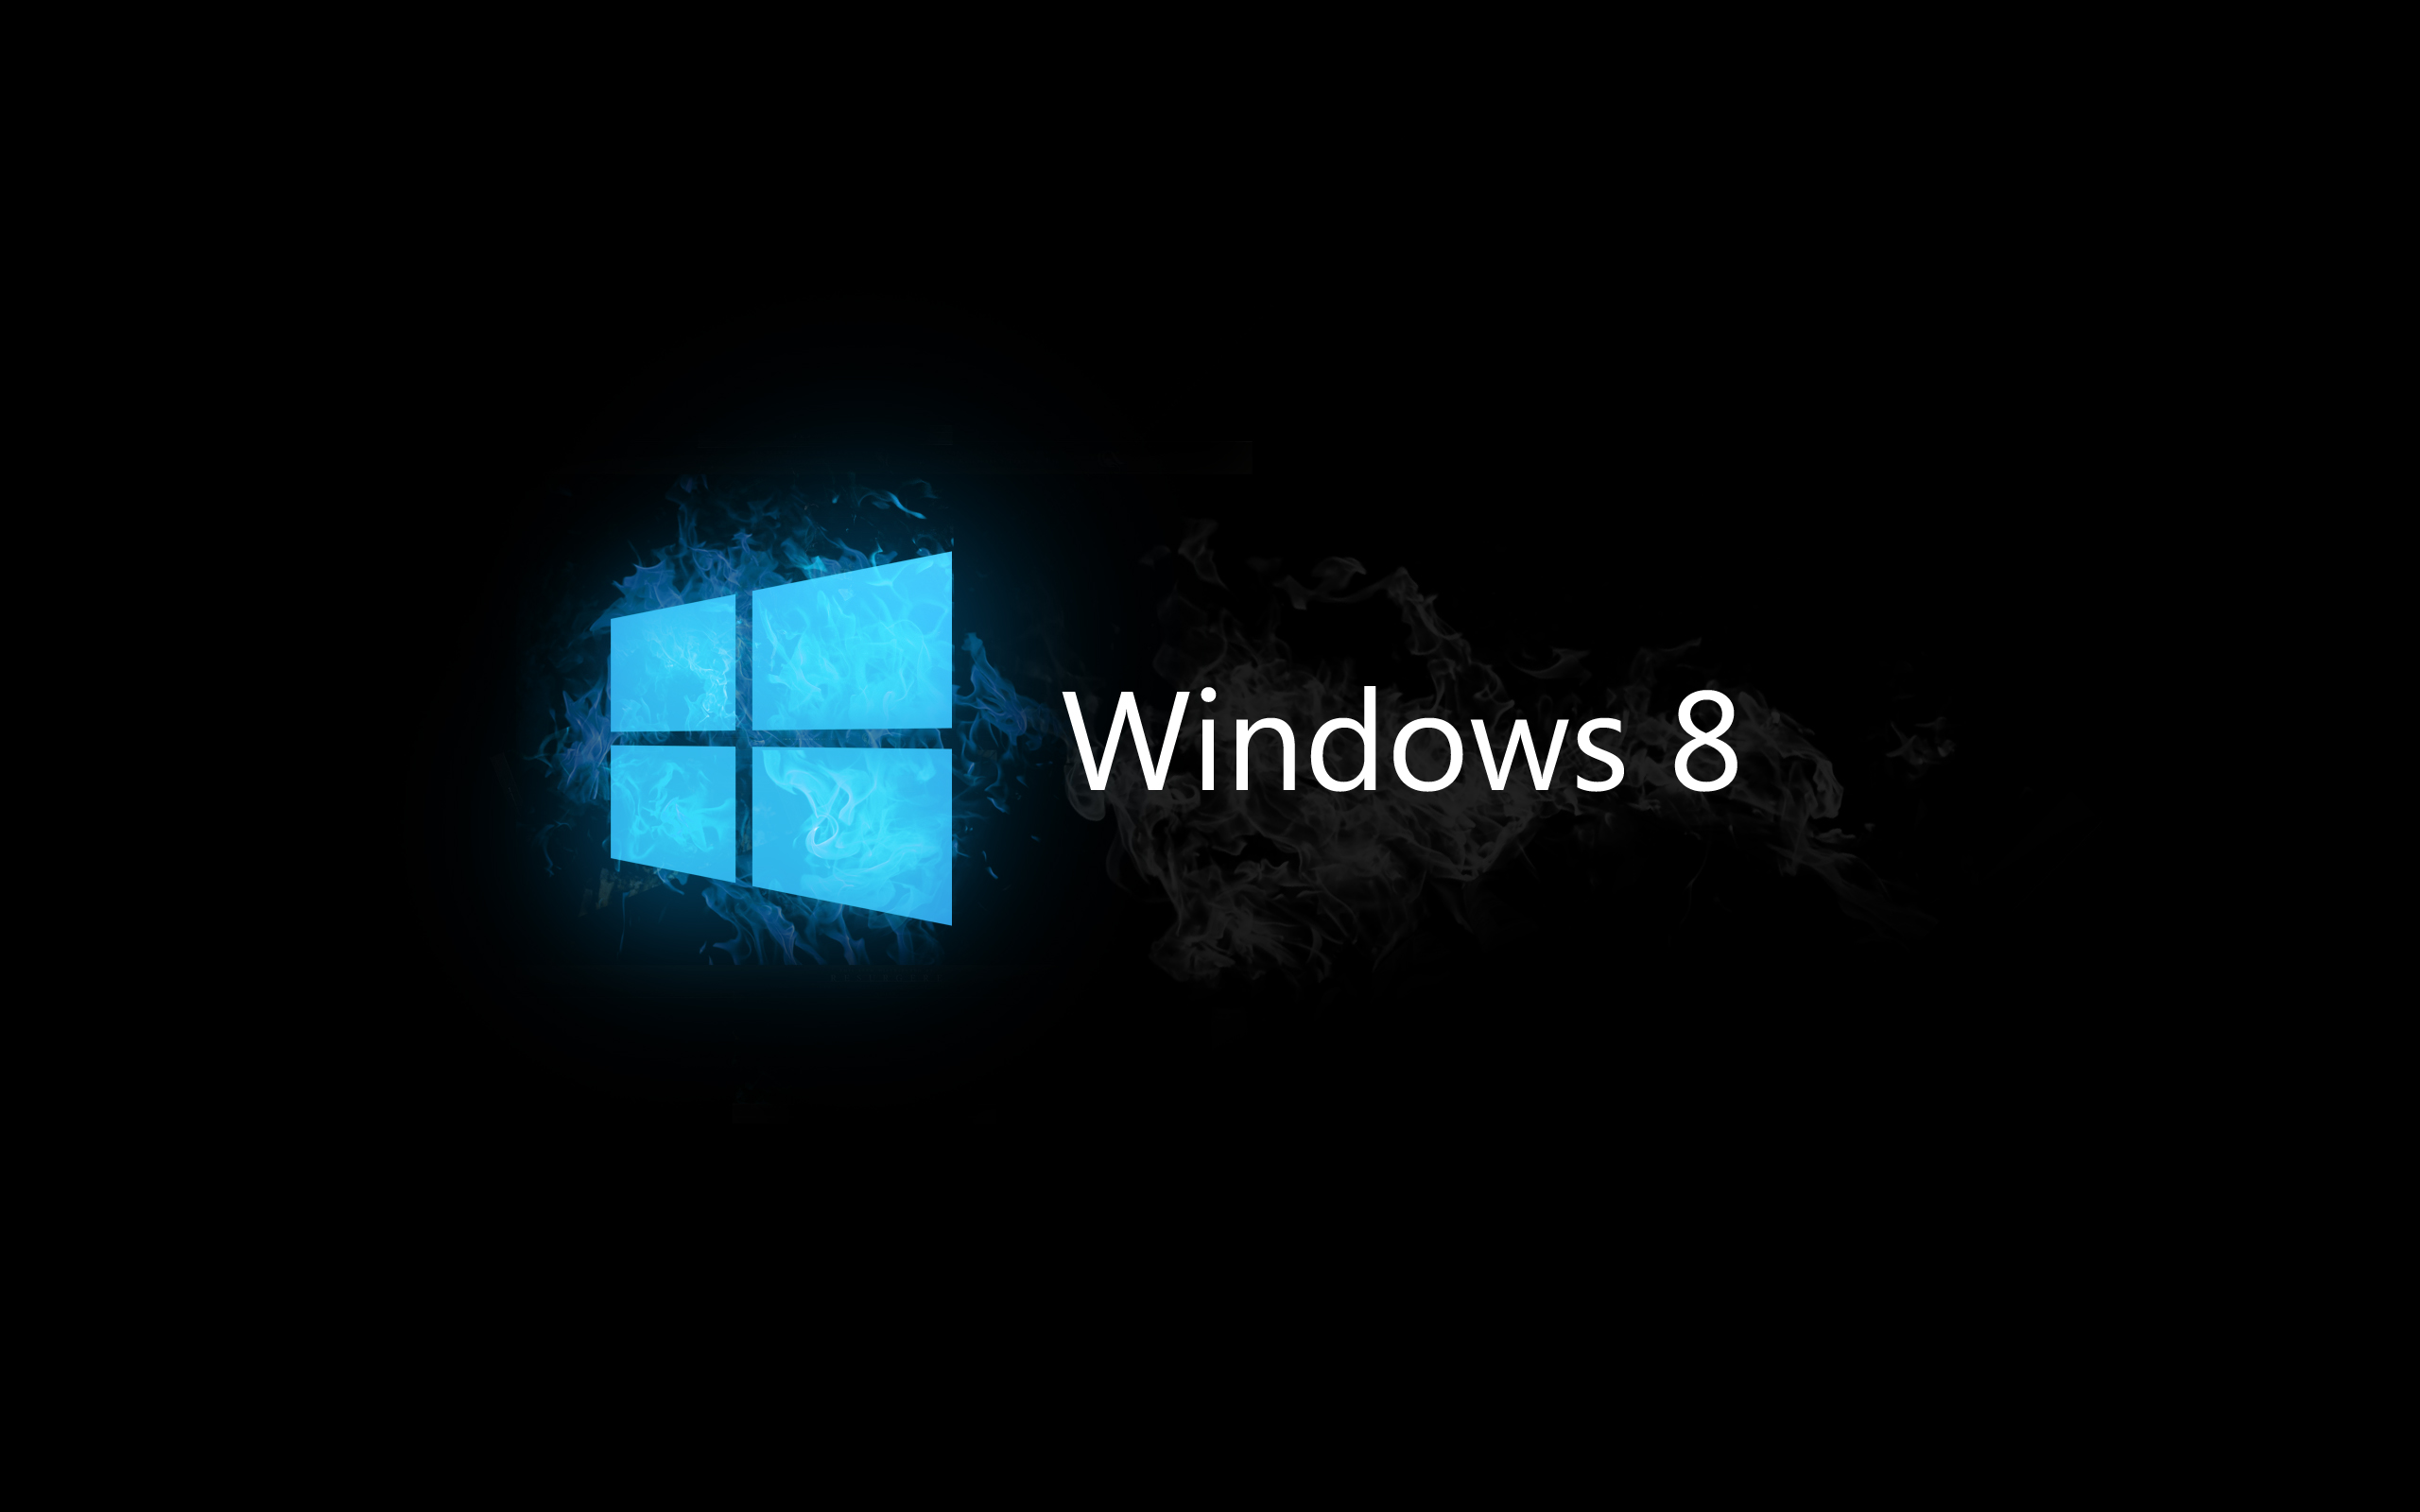 Desktop Windows 8 wallpaper | Wallpup.com